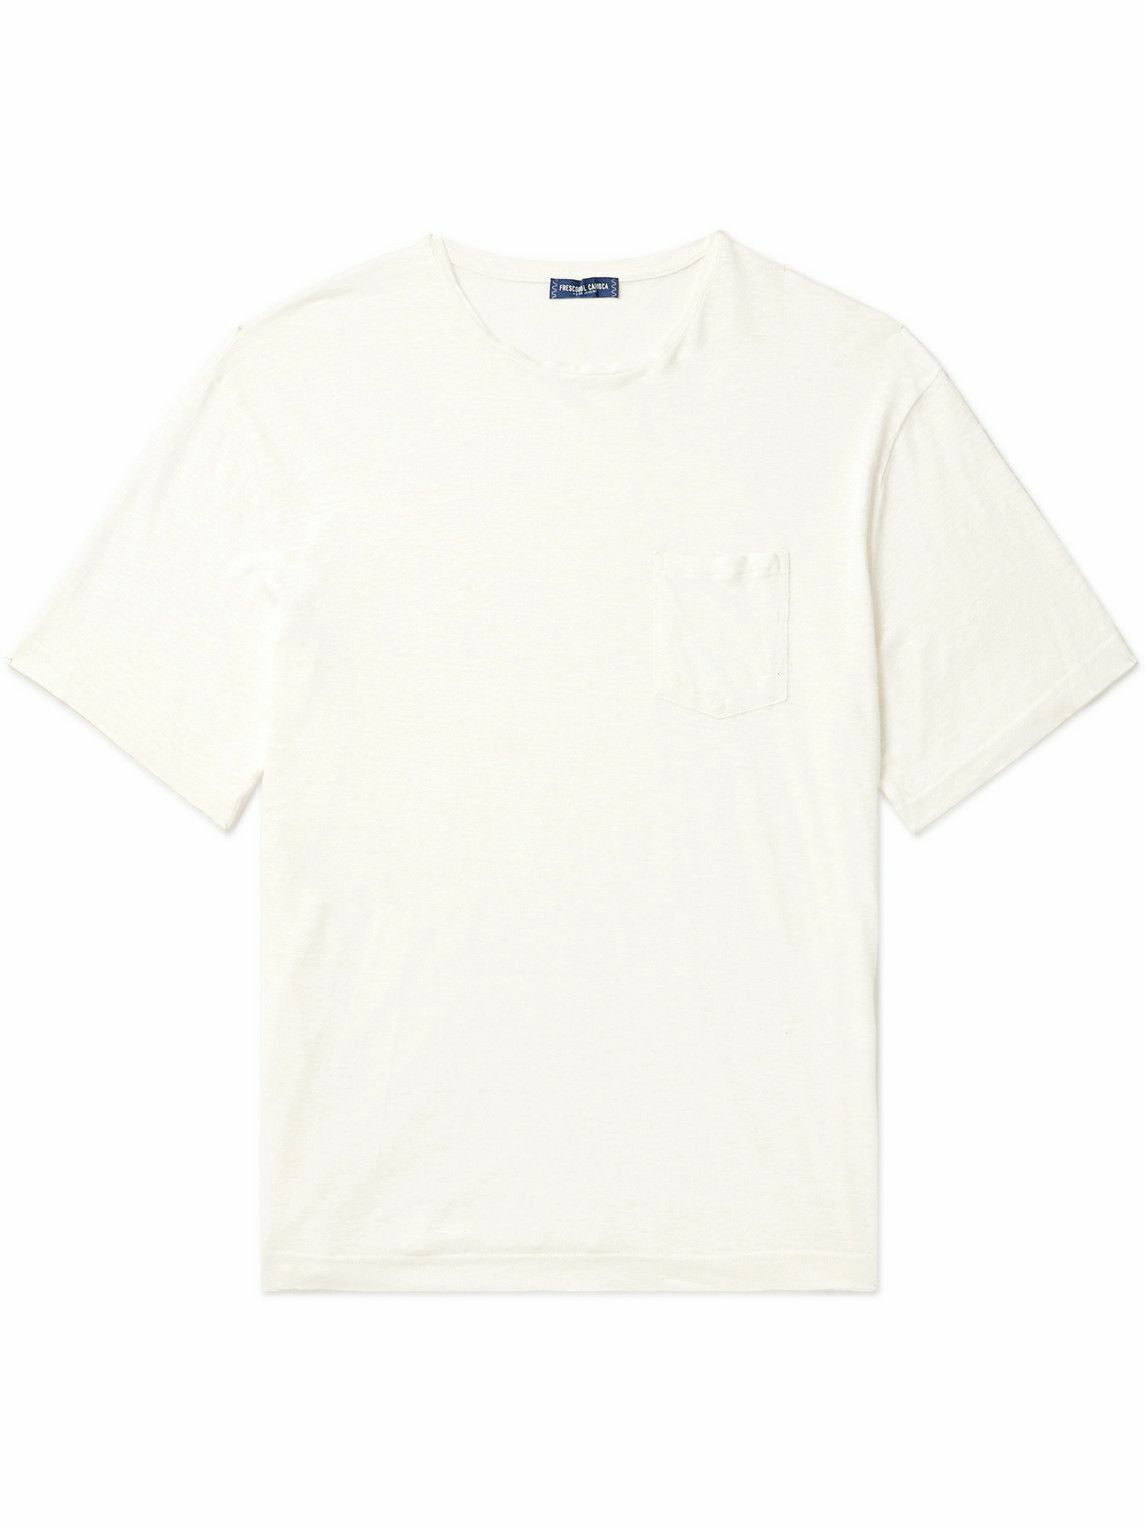 Frescobol Carioca - Carmo Linen T-Shirt - White Frescobol Carioca